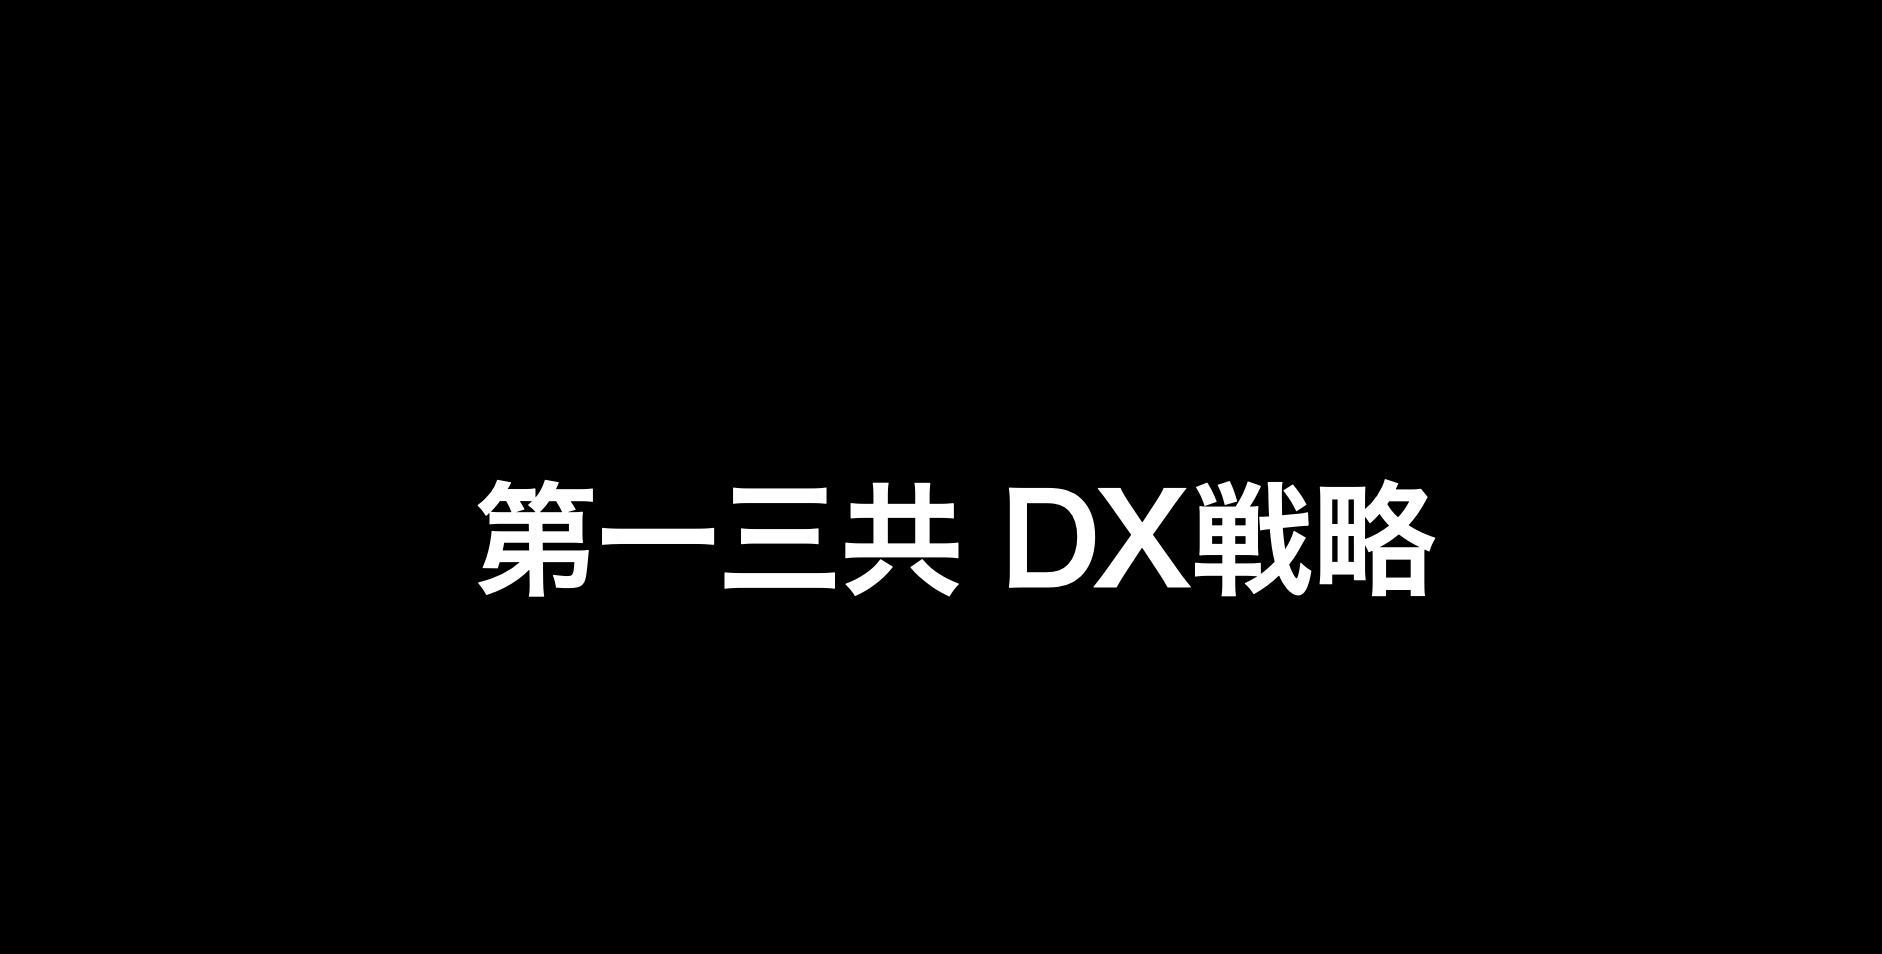 第一三共のDX戦略を解説